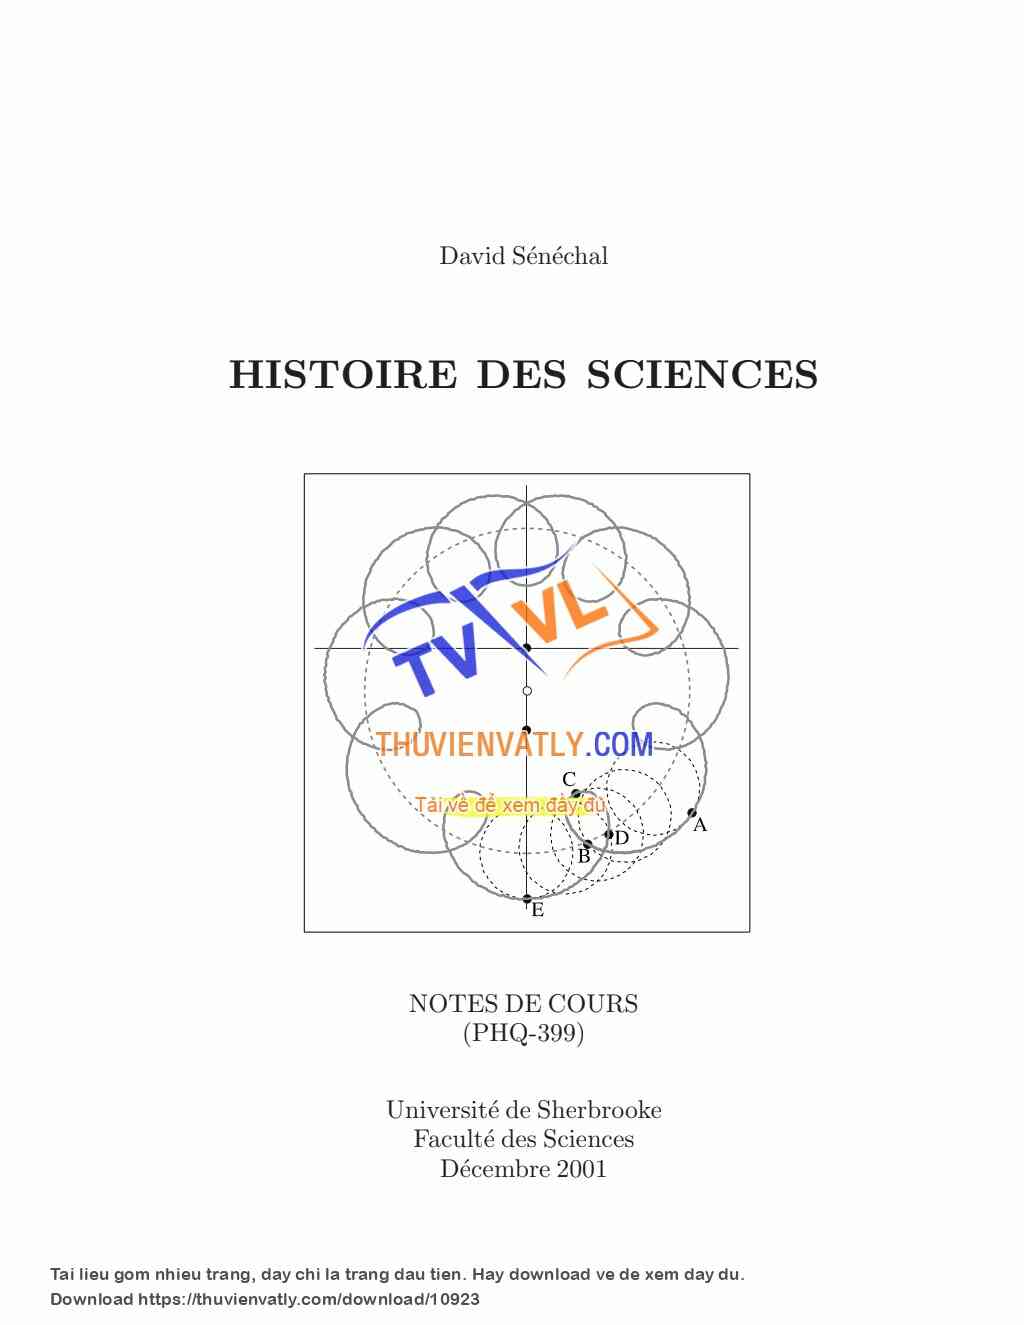 Lịch sử các khoa học (bằng tiếng Pháp)